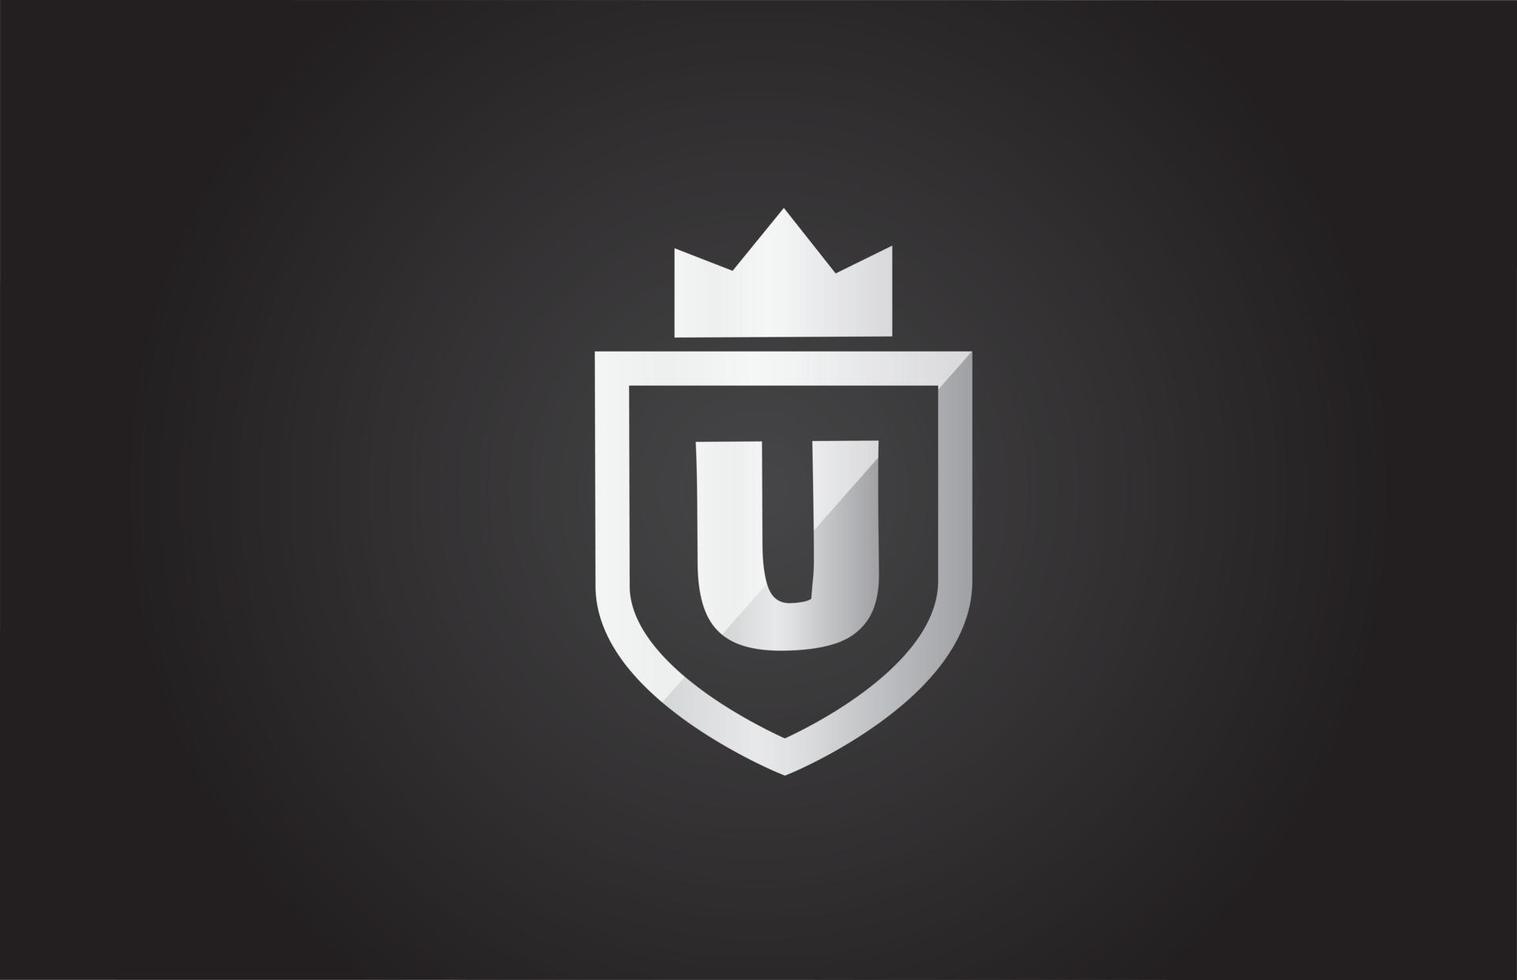 U icono de logotipo de letra del alfabeto en color gris y negro. Diseño de escudo para la identidad de la empresa con corona de rey. vector